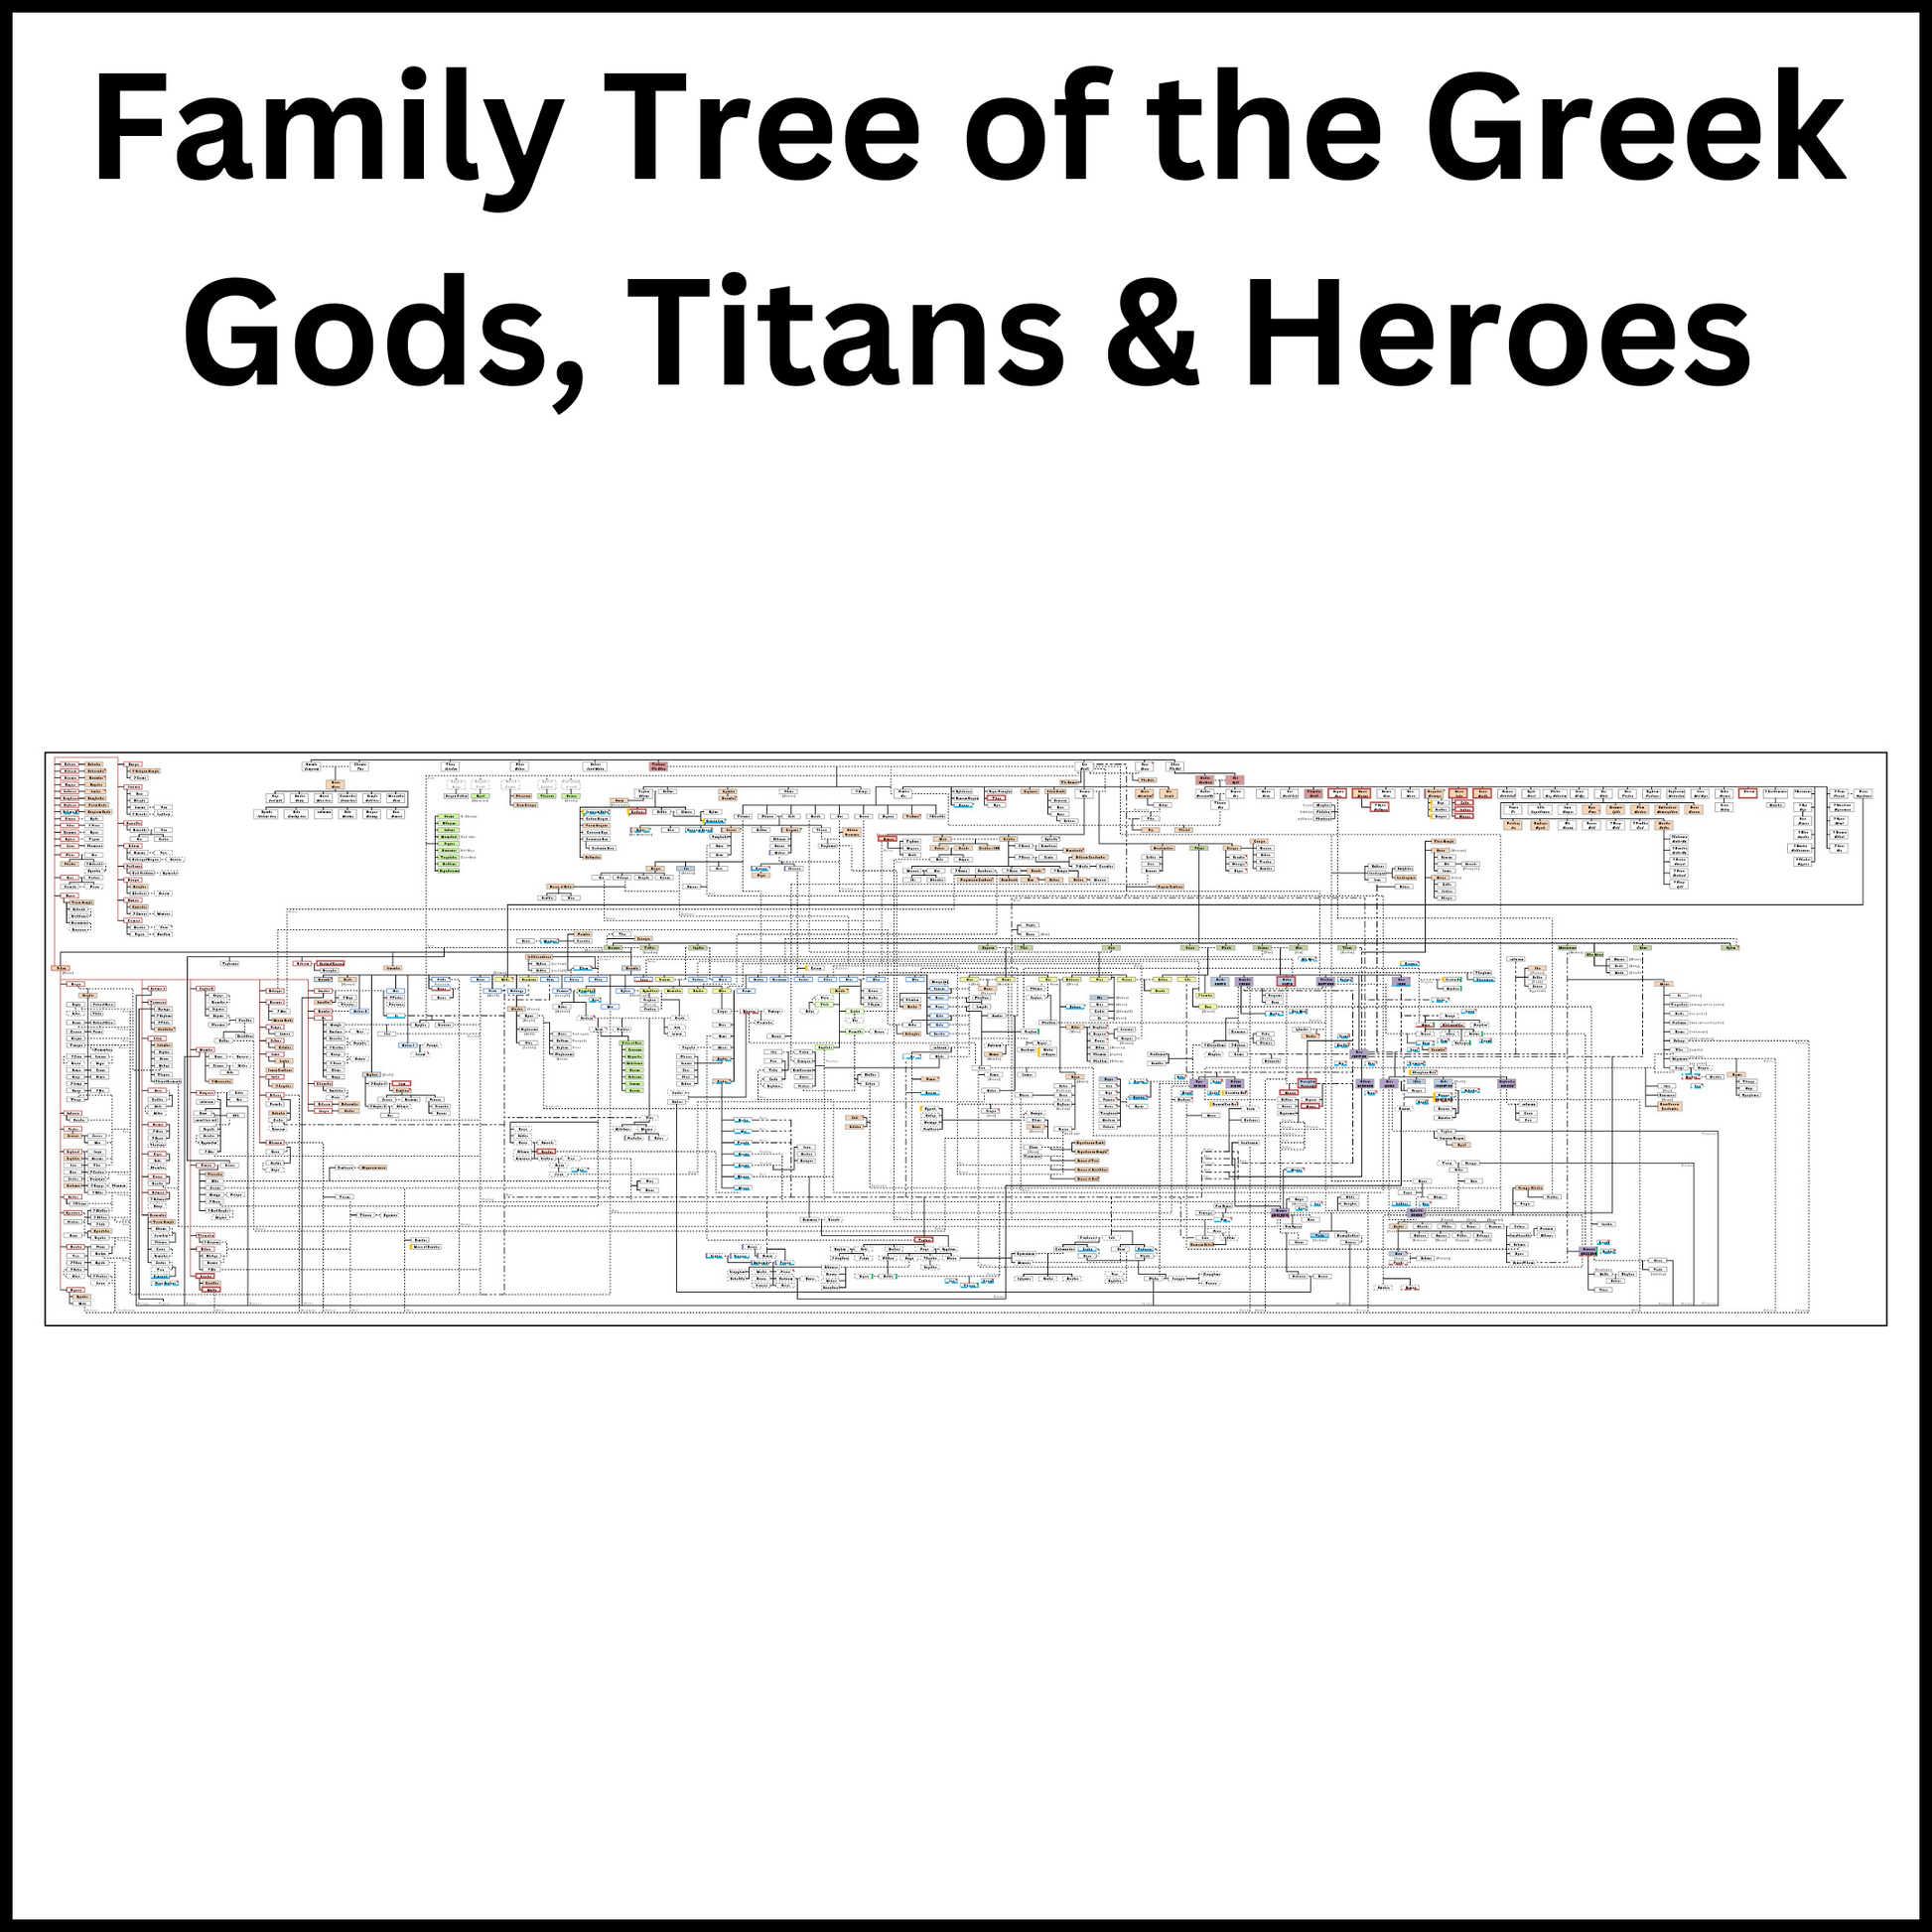 Full Family Tree of the Greek Gods and Goddesses.